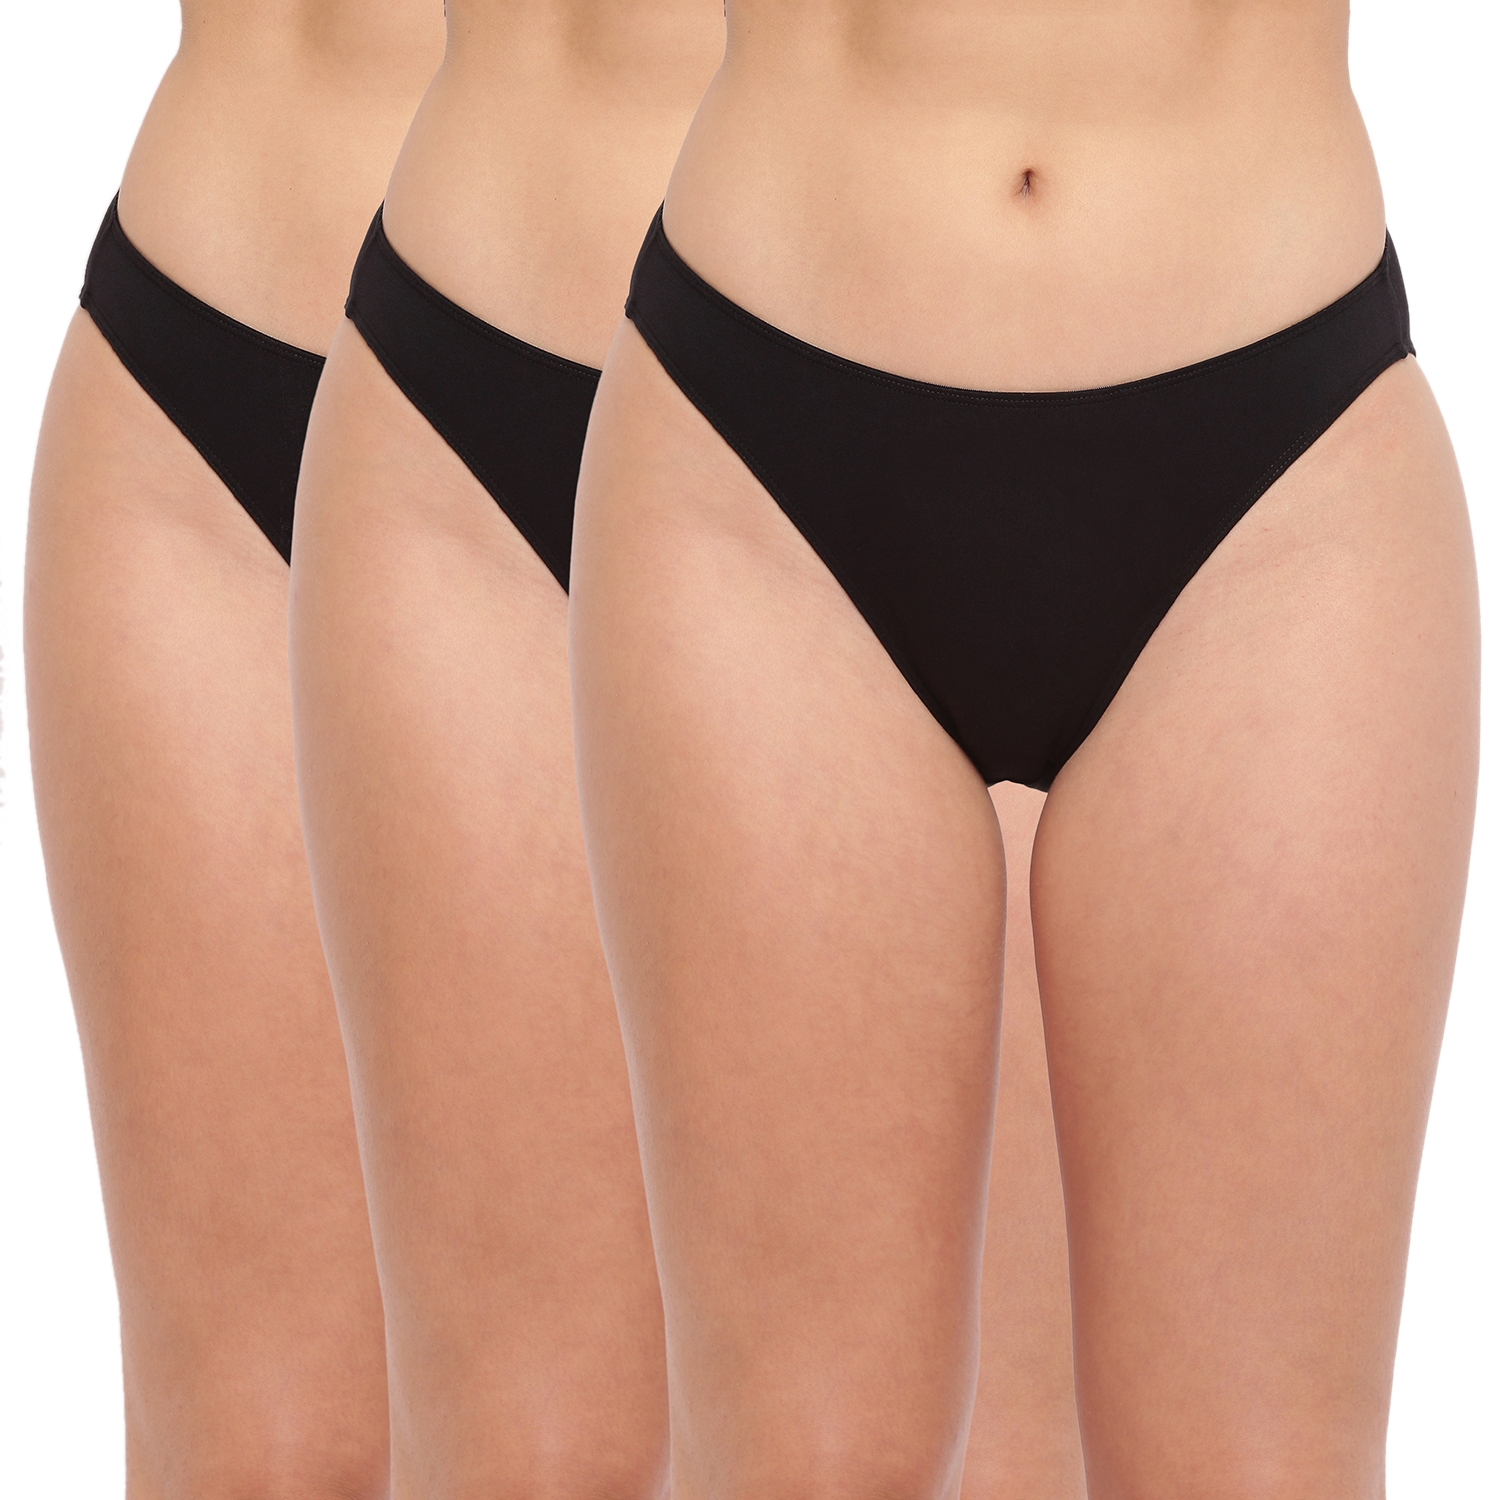 BASIICS by La Intimo | Black Glamo Rise High Leg Bikini Panty - Pack of 3